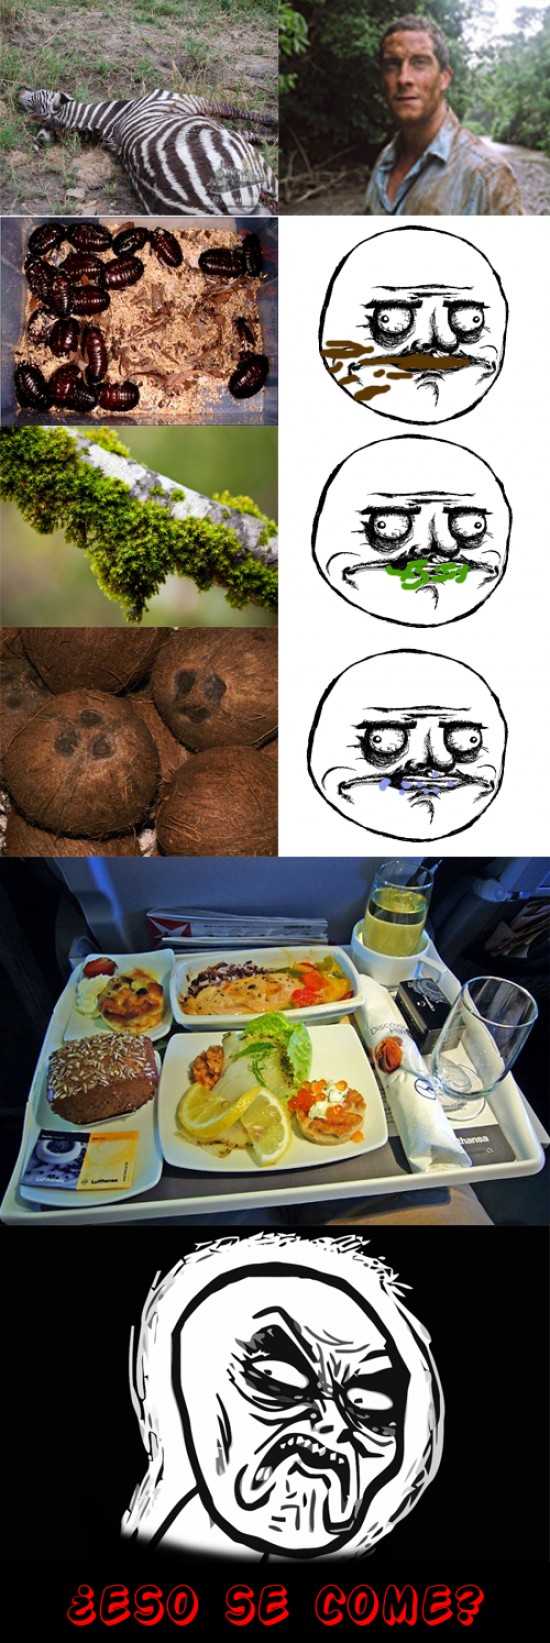 Infinito_desprecio - Bear Grylls, tiene otro concepto de la comida